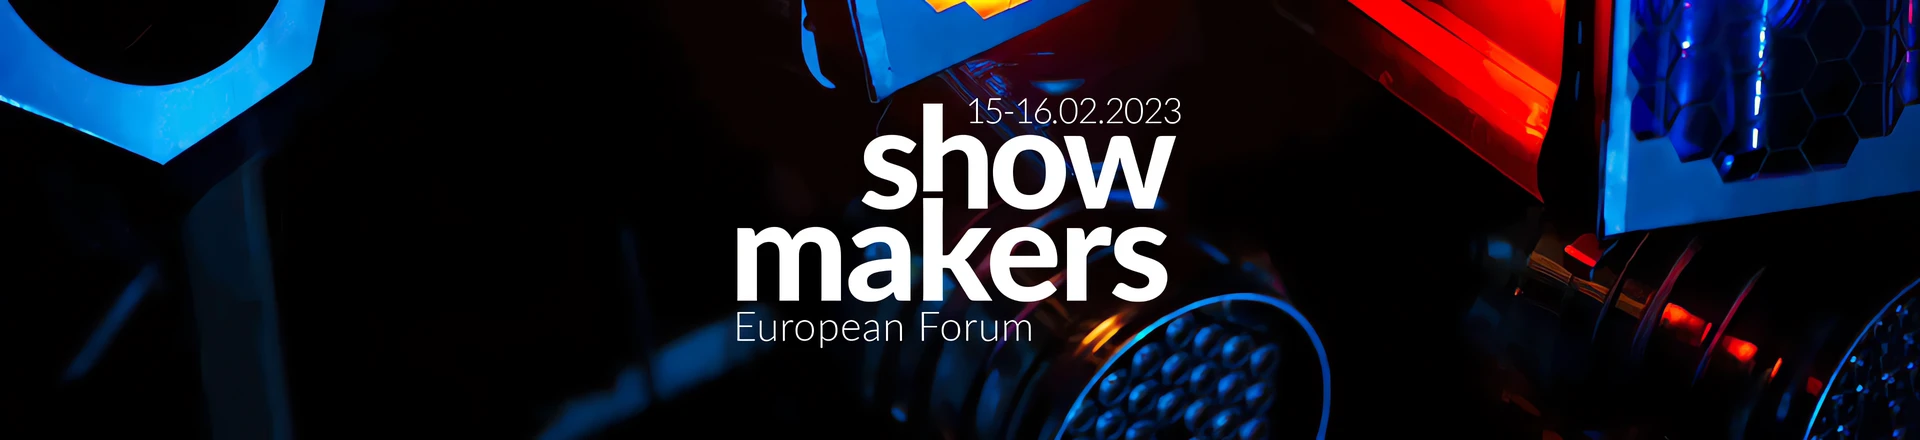 Show Makers European Forum - Wydarzenie dla pasjonatów obsługi scenografii już w lutym